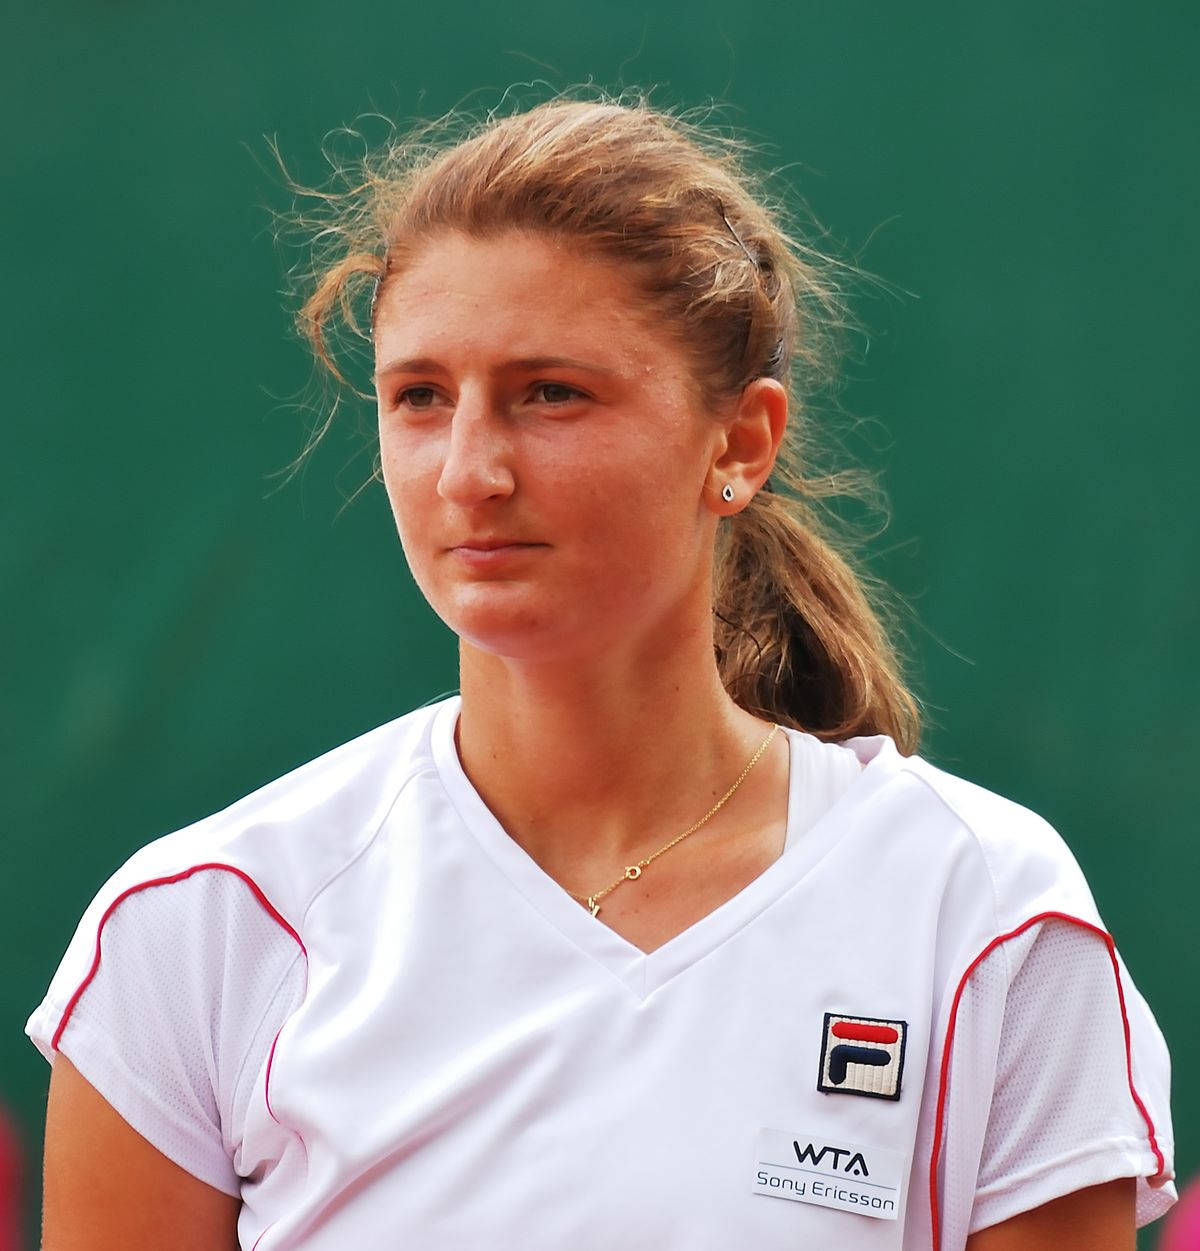 2011 Budapest Tennis Player Irina-camelia Begu Wallpaper